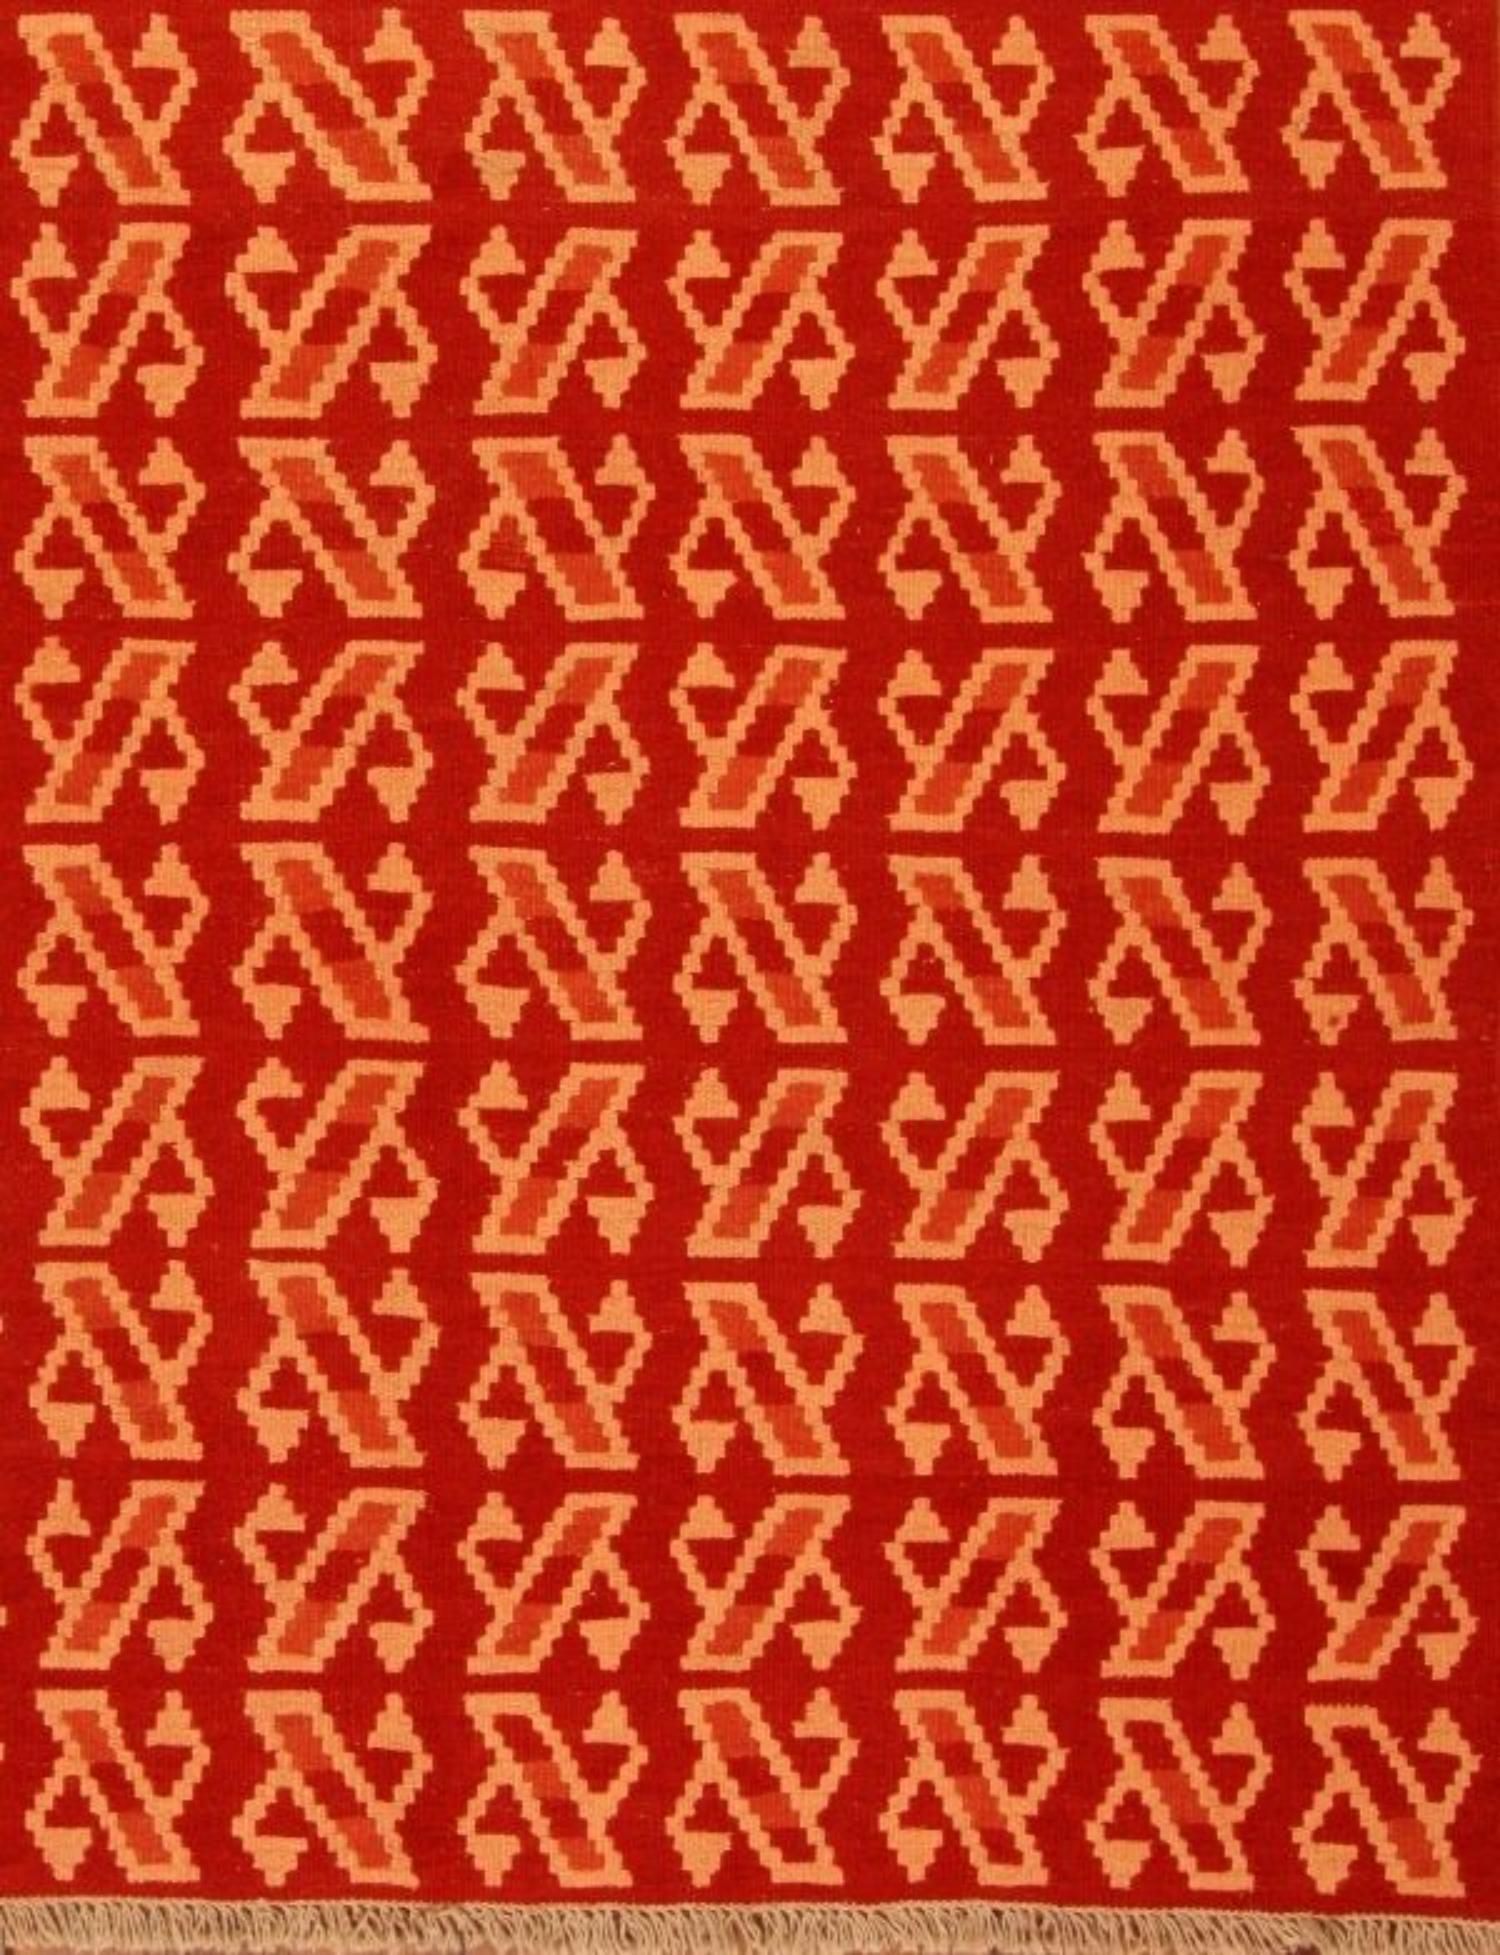 Handgefertigter Vintage Persian Style Ardabil Kilim Rug (160cm x 210cm / 5.25ft x 6.89ft)

Tauchen Sie ein in eine Welt geometrischer Eleganz mit unserem handgefertigten Ardabil-Kilim-Teppich im persischen Vintage-Stil. Dieser aus den 1970er Jahren